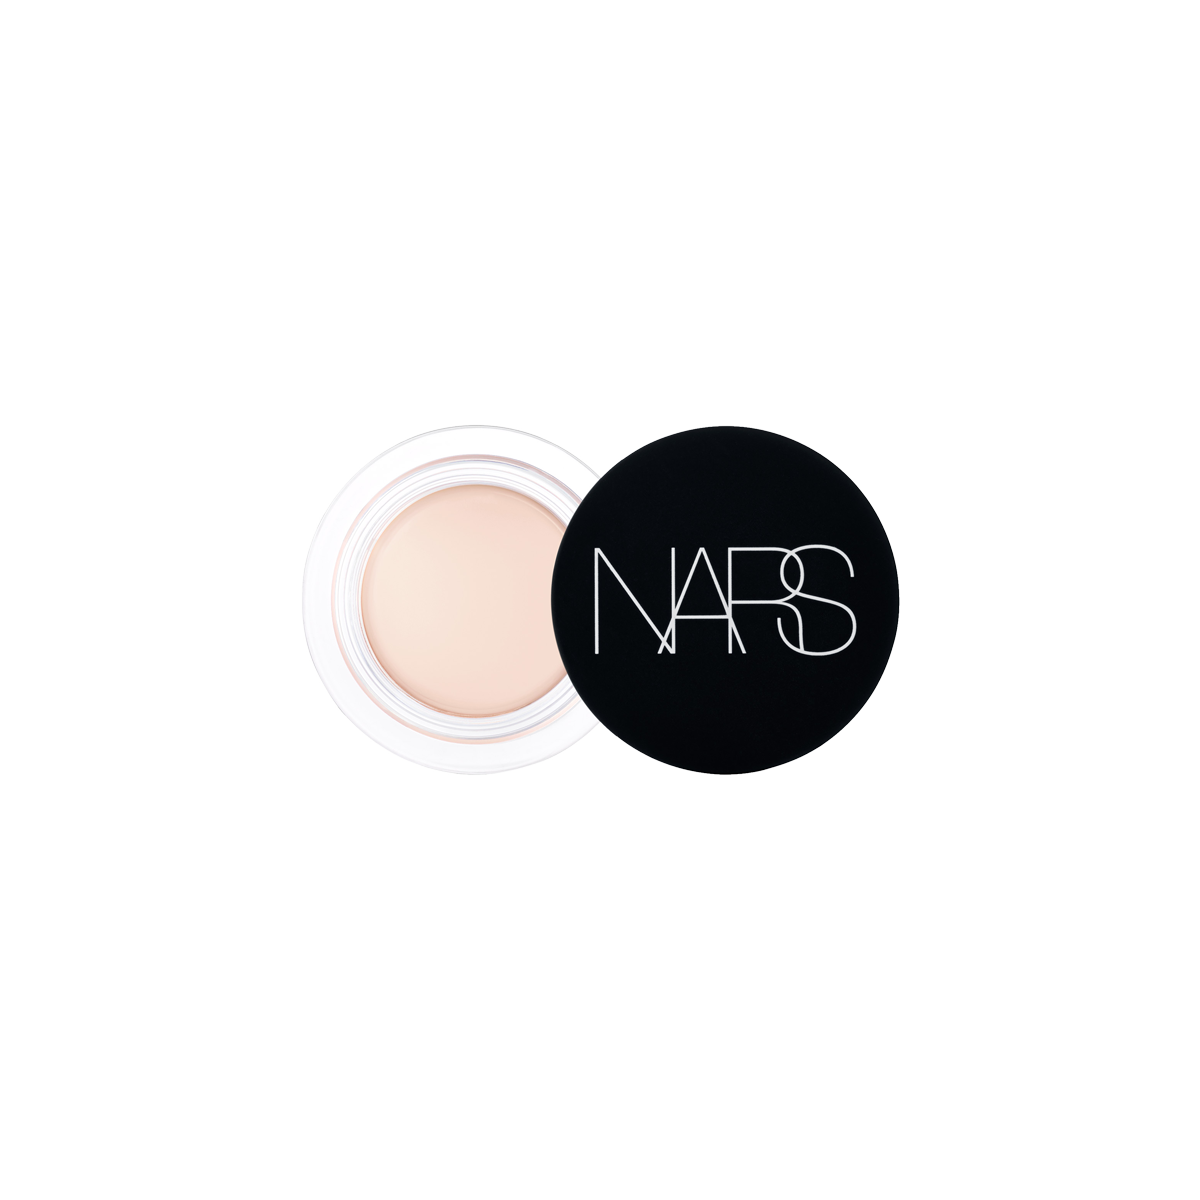 NARS - Soft Matte Concealer